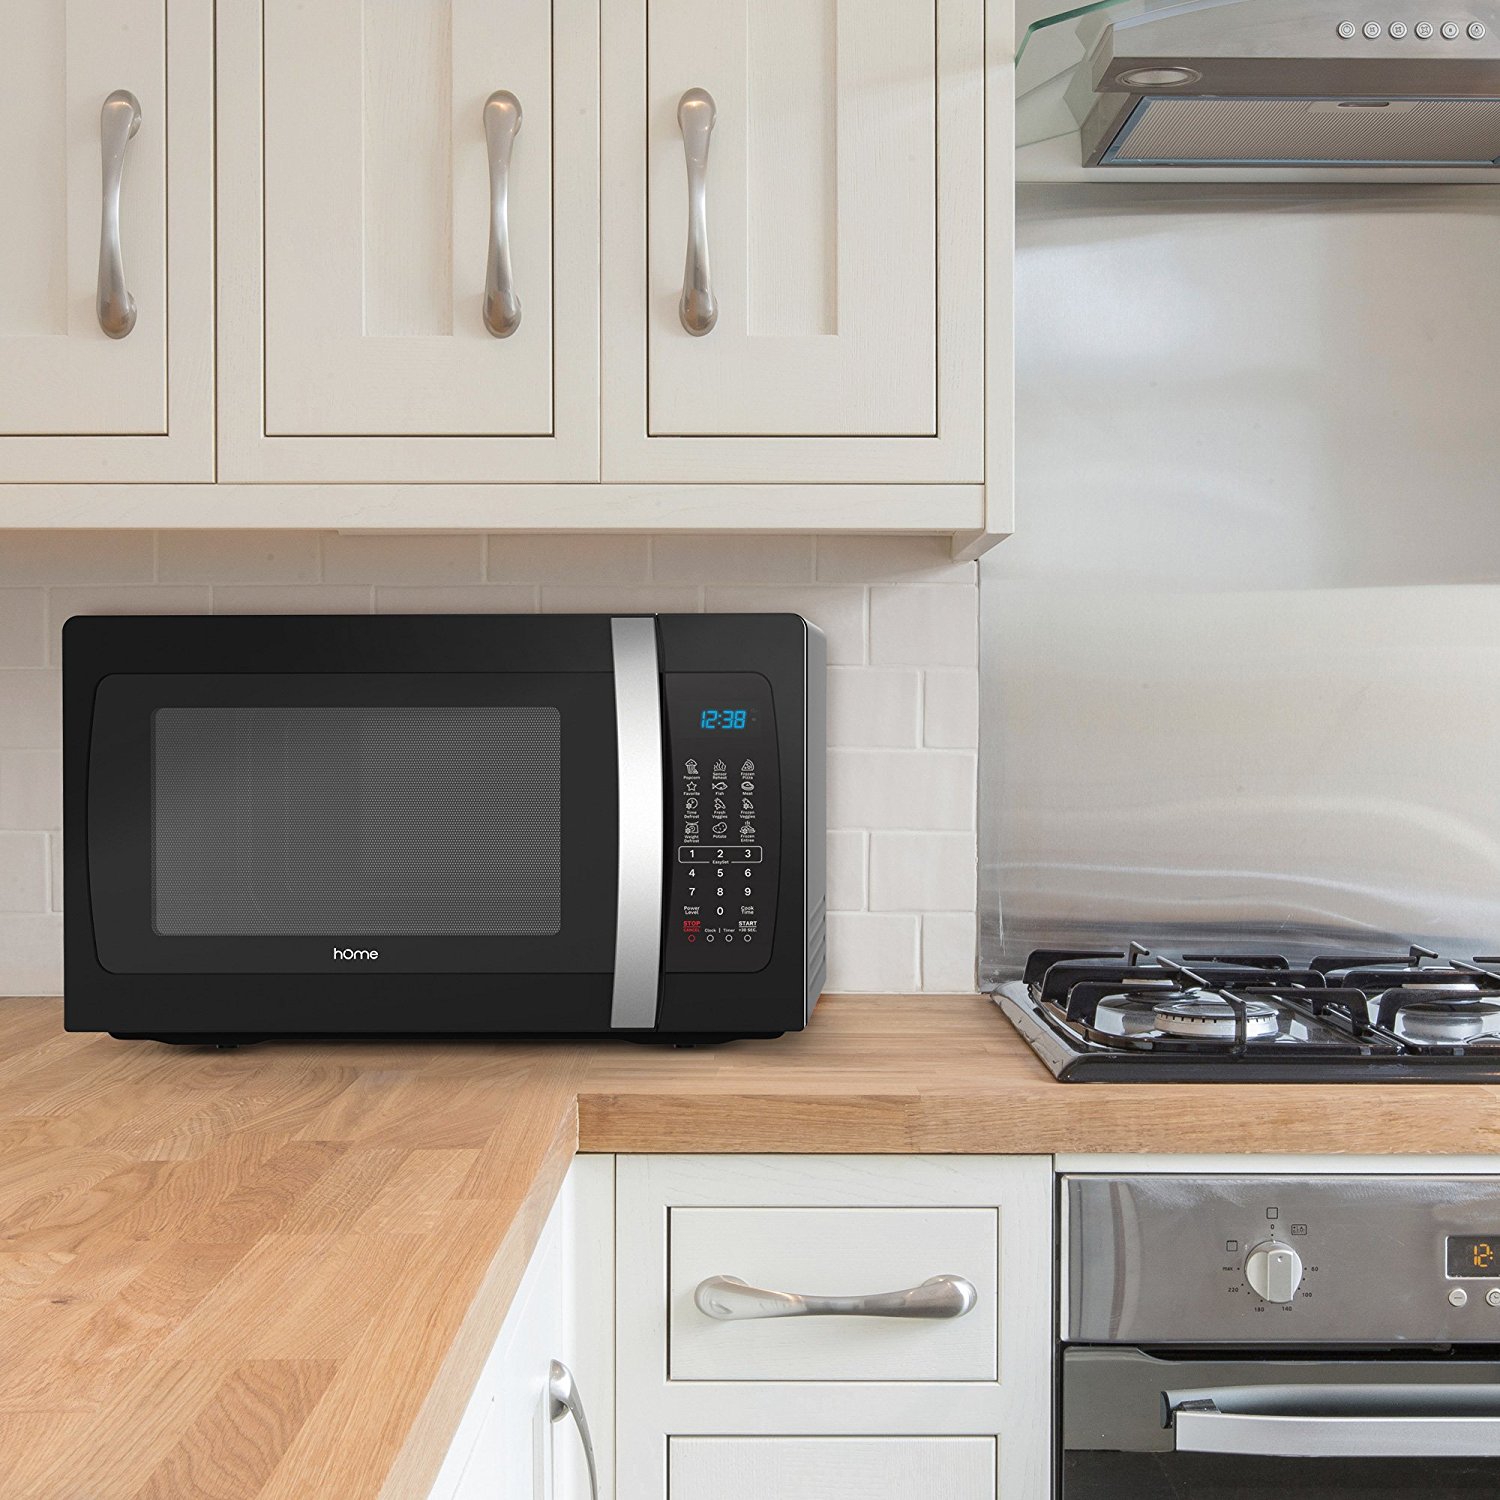 Г свч. Samsung m7135 Microwave Oven. Samsung Microwave Oven с вытяжкой. Artel микроволновая печь 2022. Smart Countertop Microwave Oven.